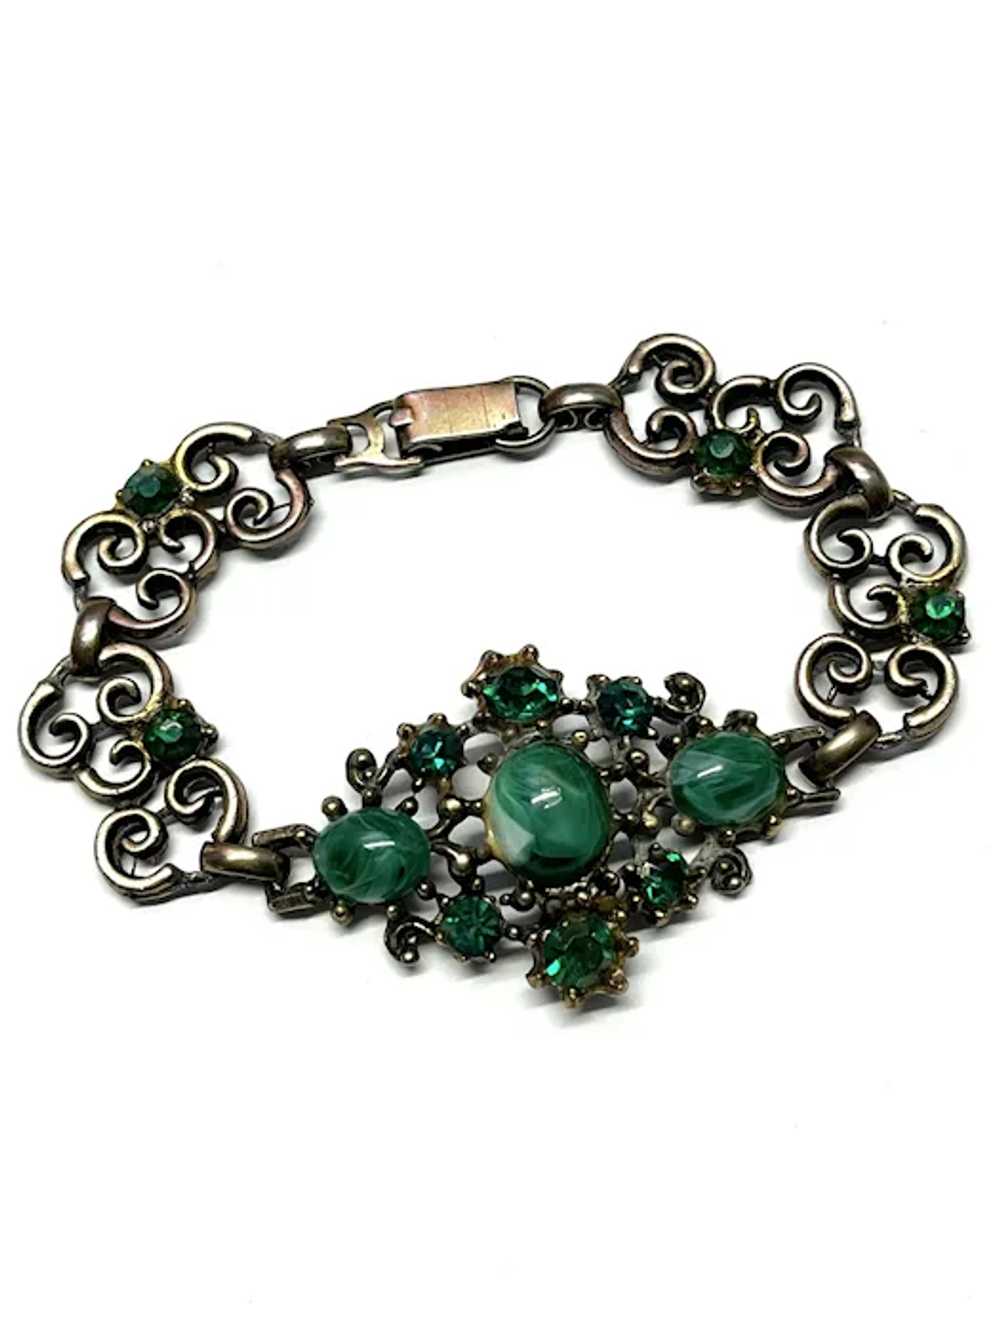 Vintage Green Glass Bracelet - image 2